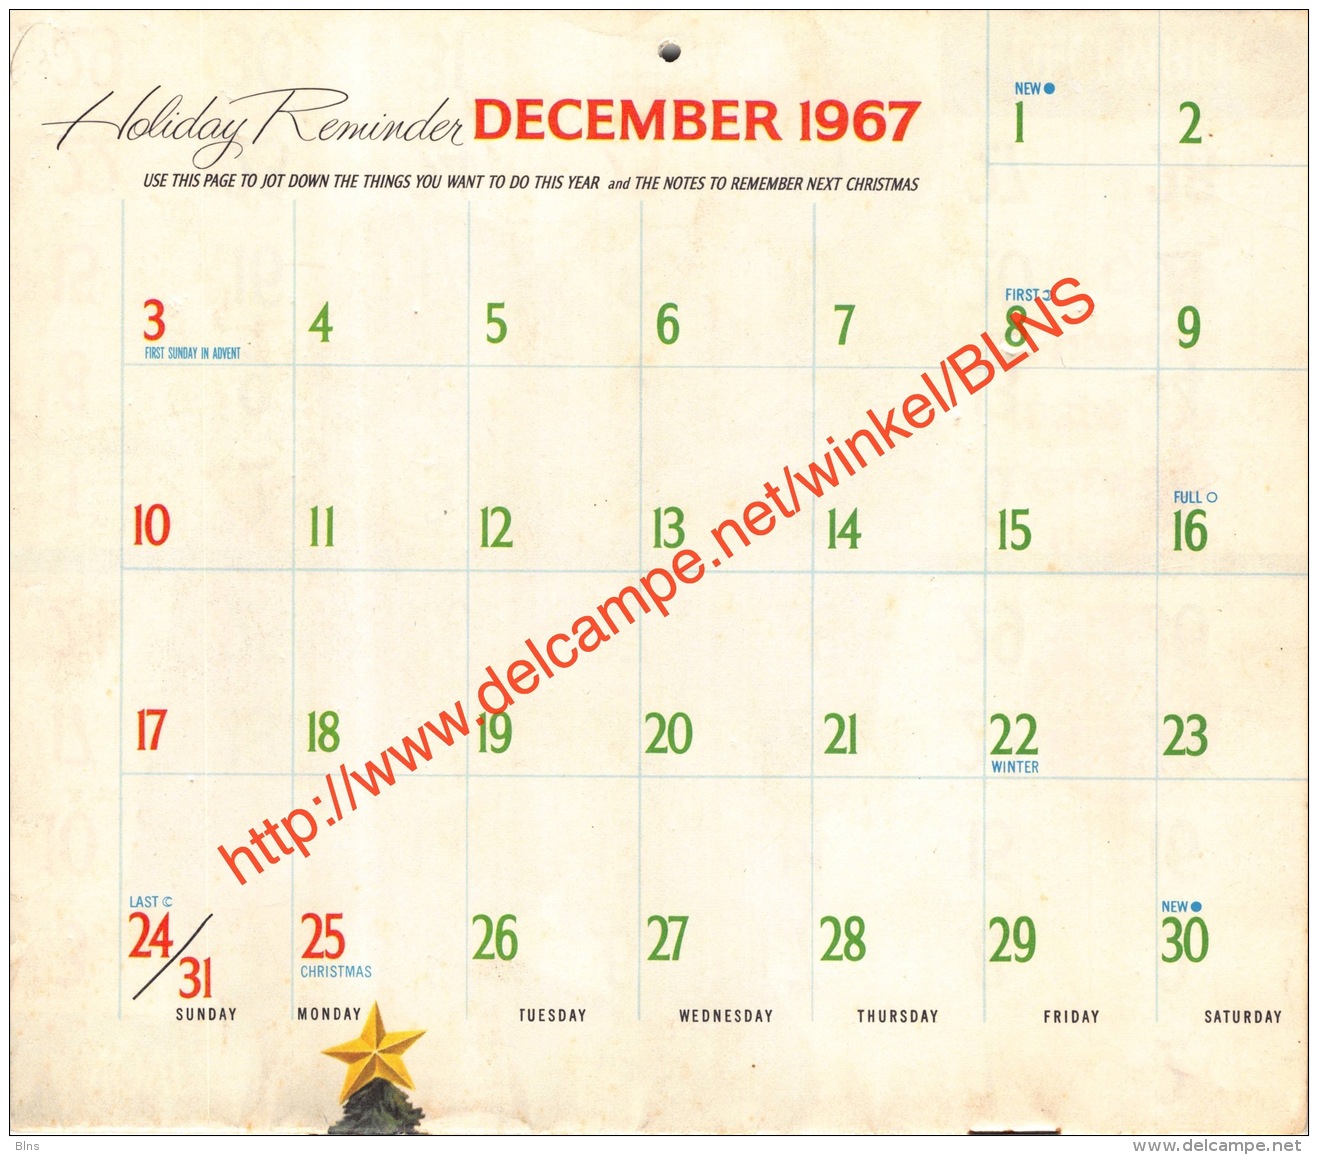 1968 Caldendar Coca-Cola - 18x15cm - 16 Pages - Kalenders